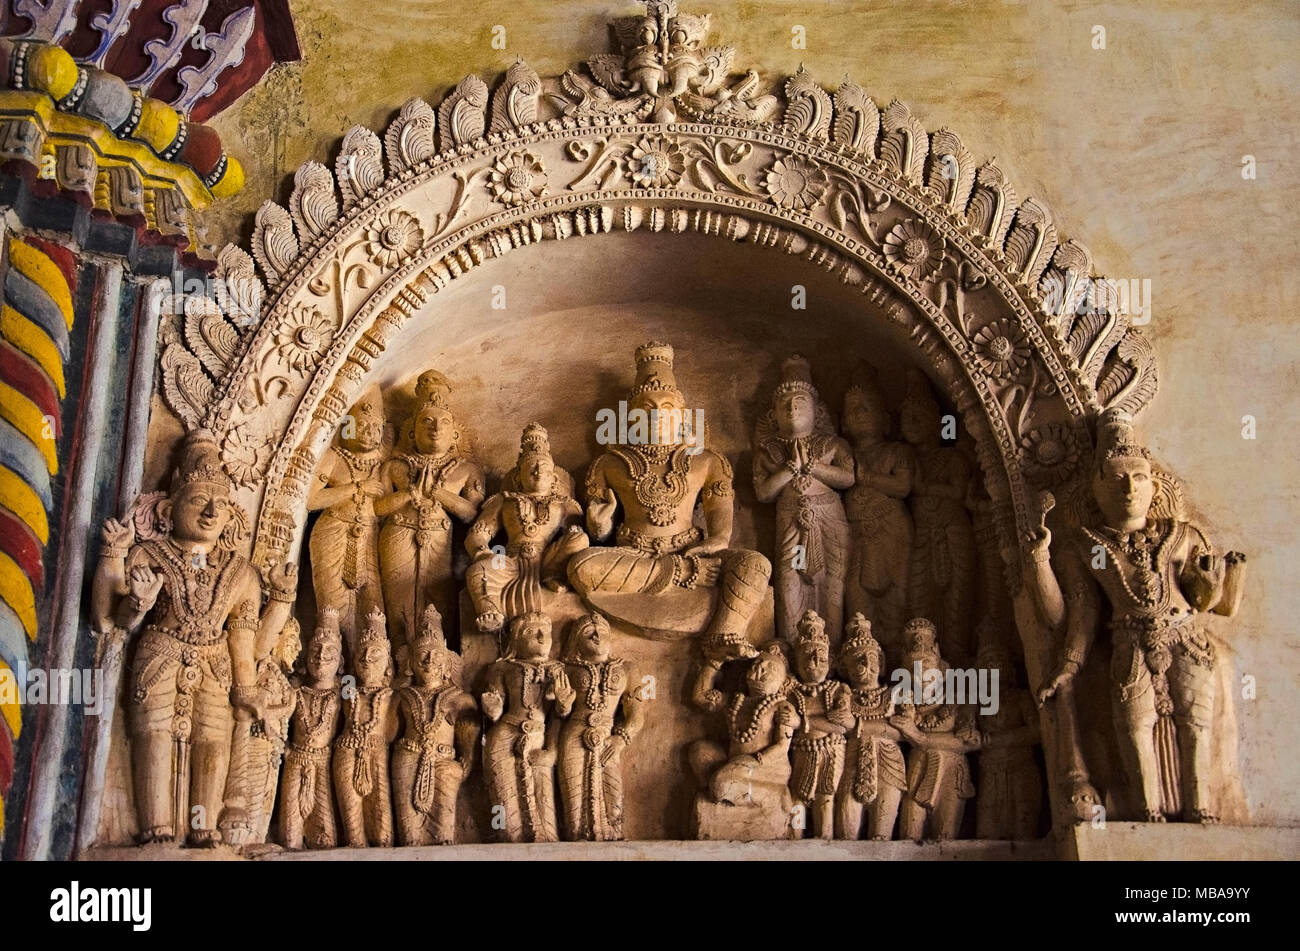 Geschnitzte Götzen auf der inneren Wand des Durbar Hall der Thanjavur Maratha Palace, Thanjavur, Tamil Nadu, Indien. Vor Ort als Wohnsitz der Bhonsl bekannt Stockfoto